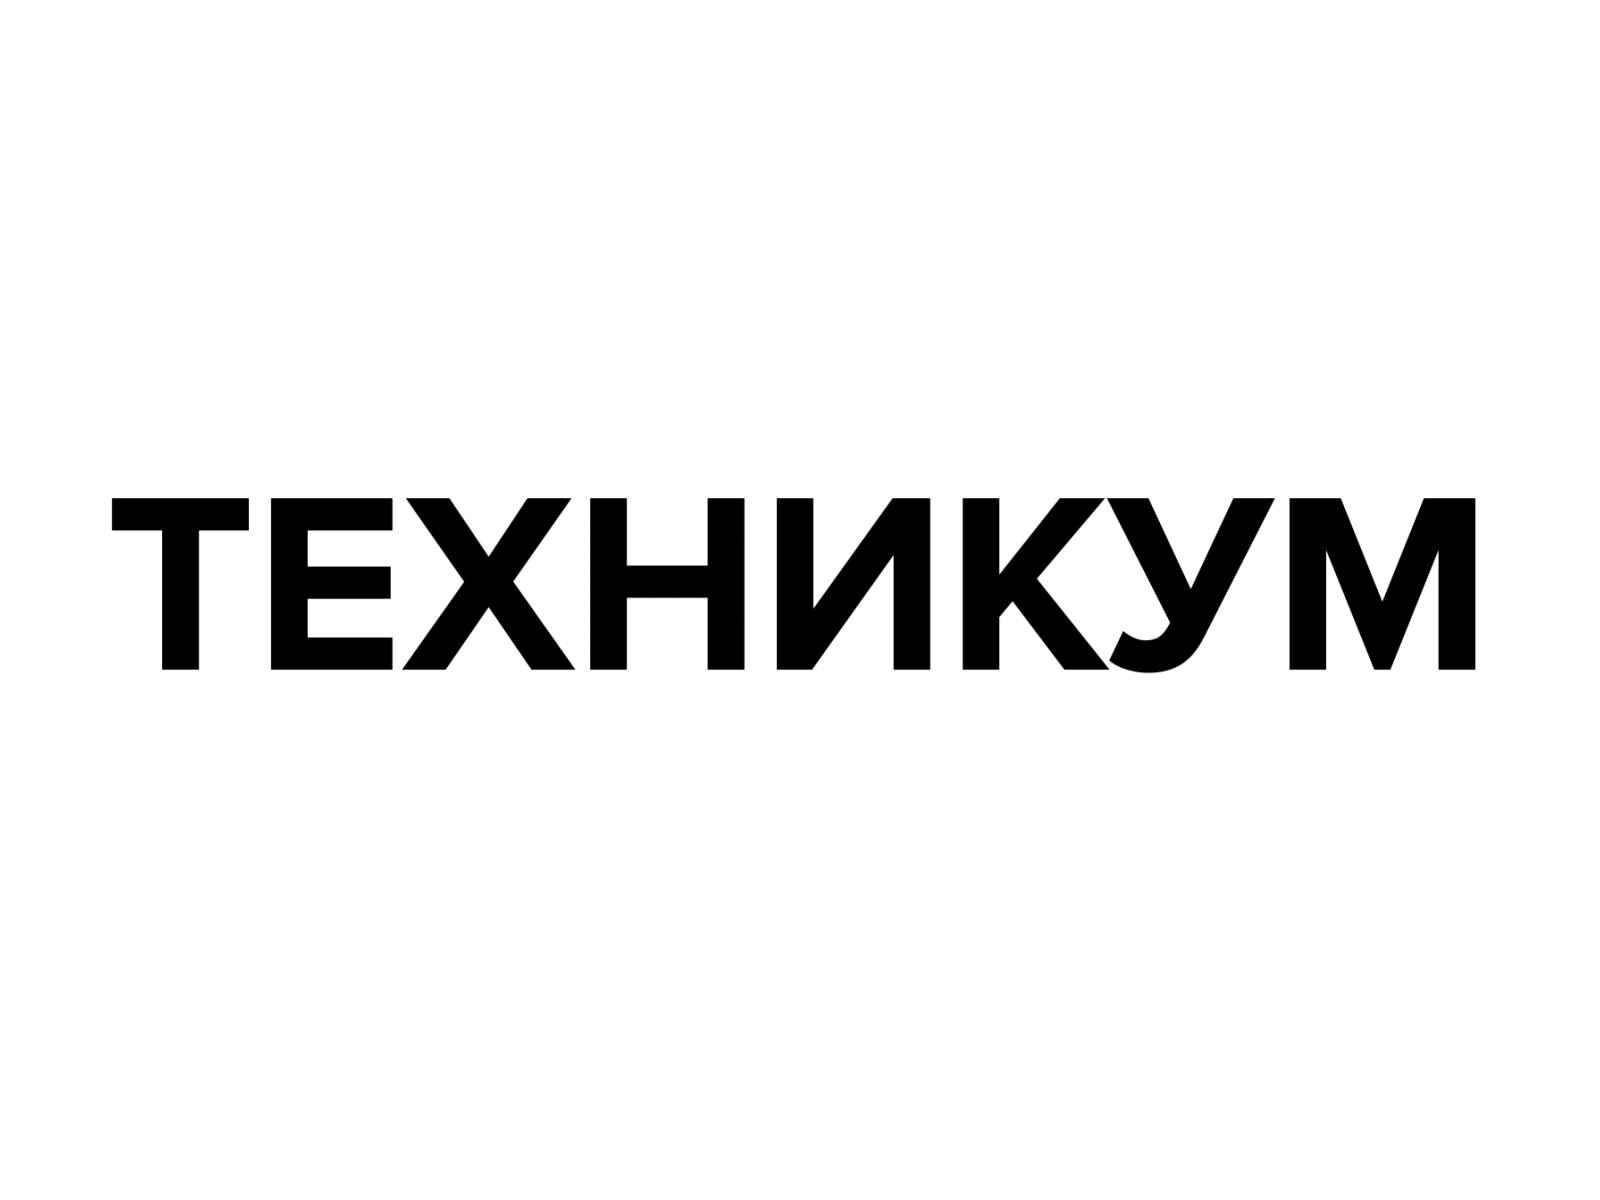 TEHNICUM branding design flat graphic graphic design illustration logo motion graphics vector